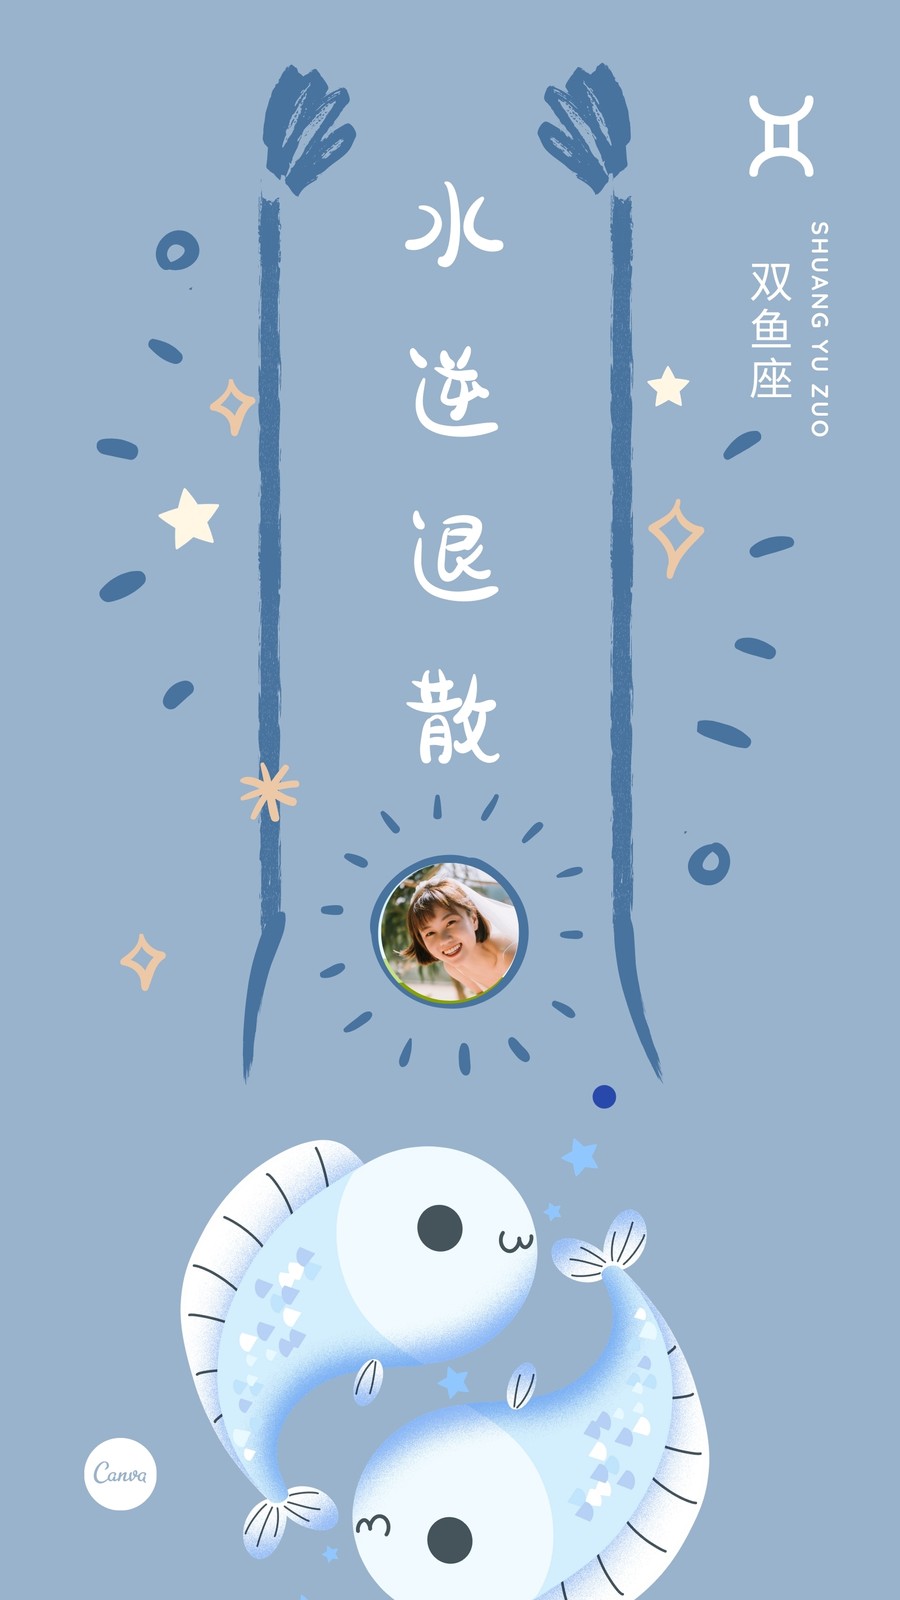 灰蓝色双鱼座水逆退散十二星座可爱星座个人分享中文手机壁纸 模板 Canva可画